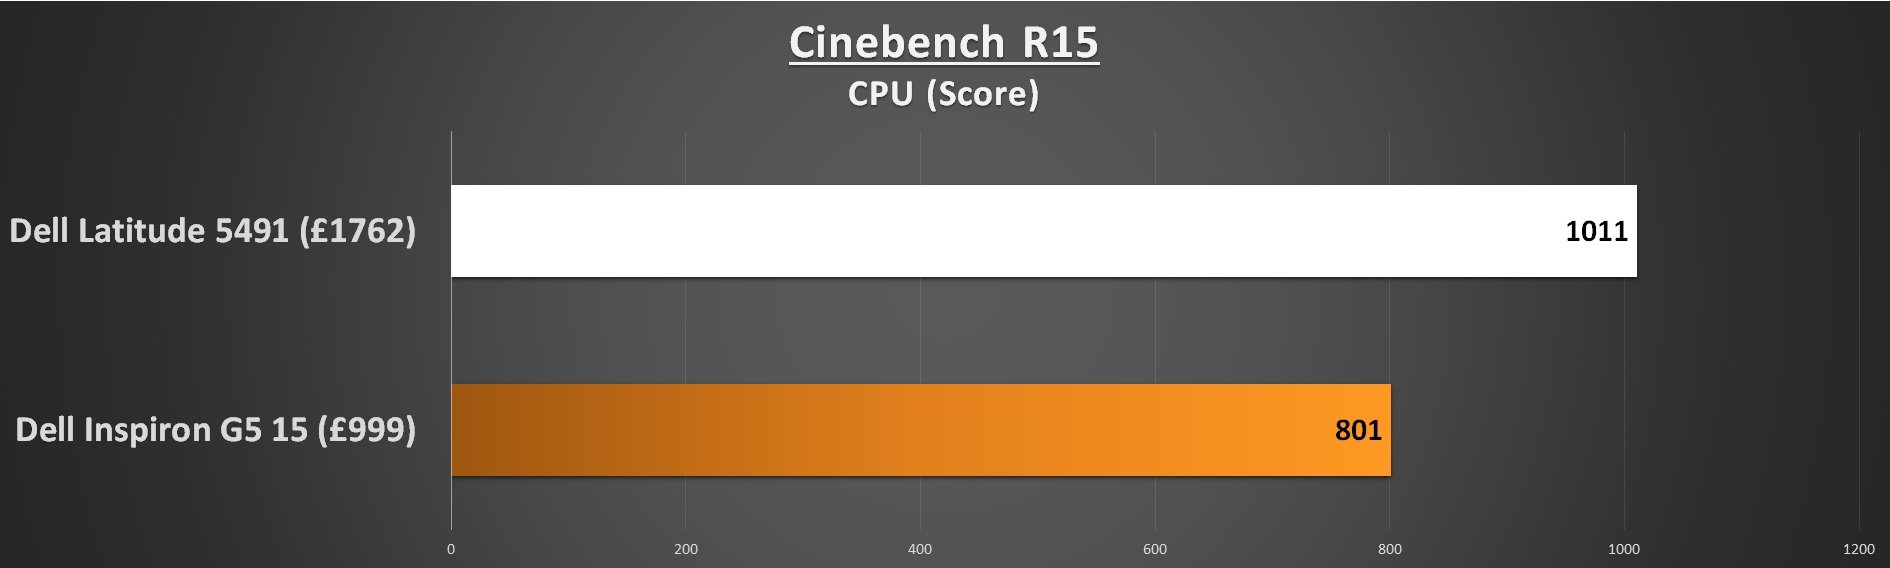 Dell Lattitude 5491 Cinebench R15 CPU